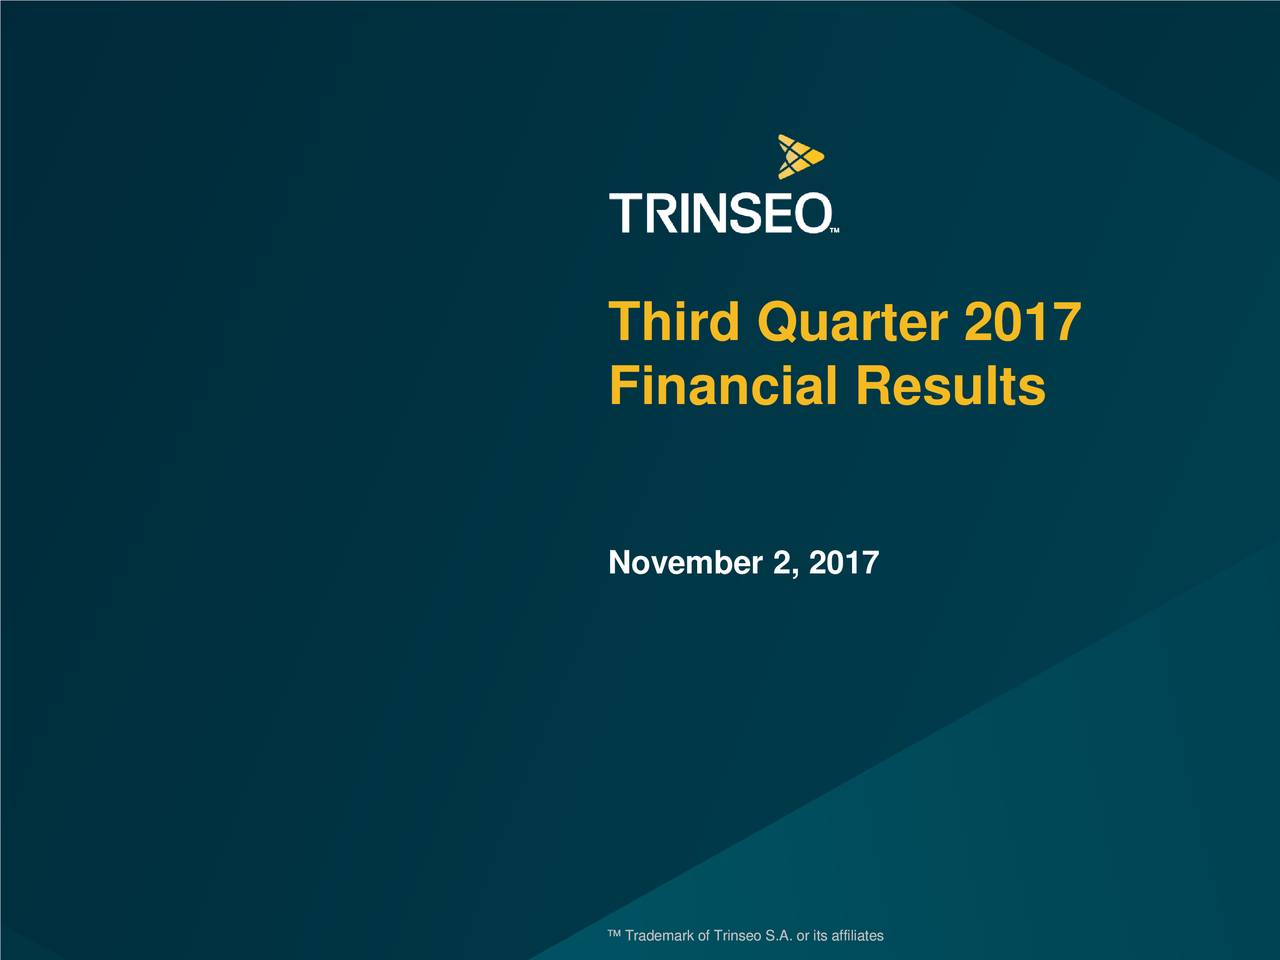 Third Quarter 2017